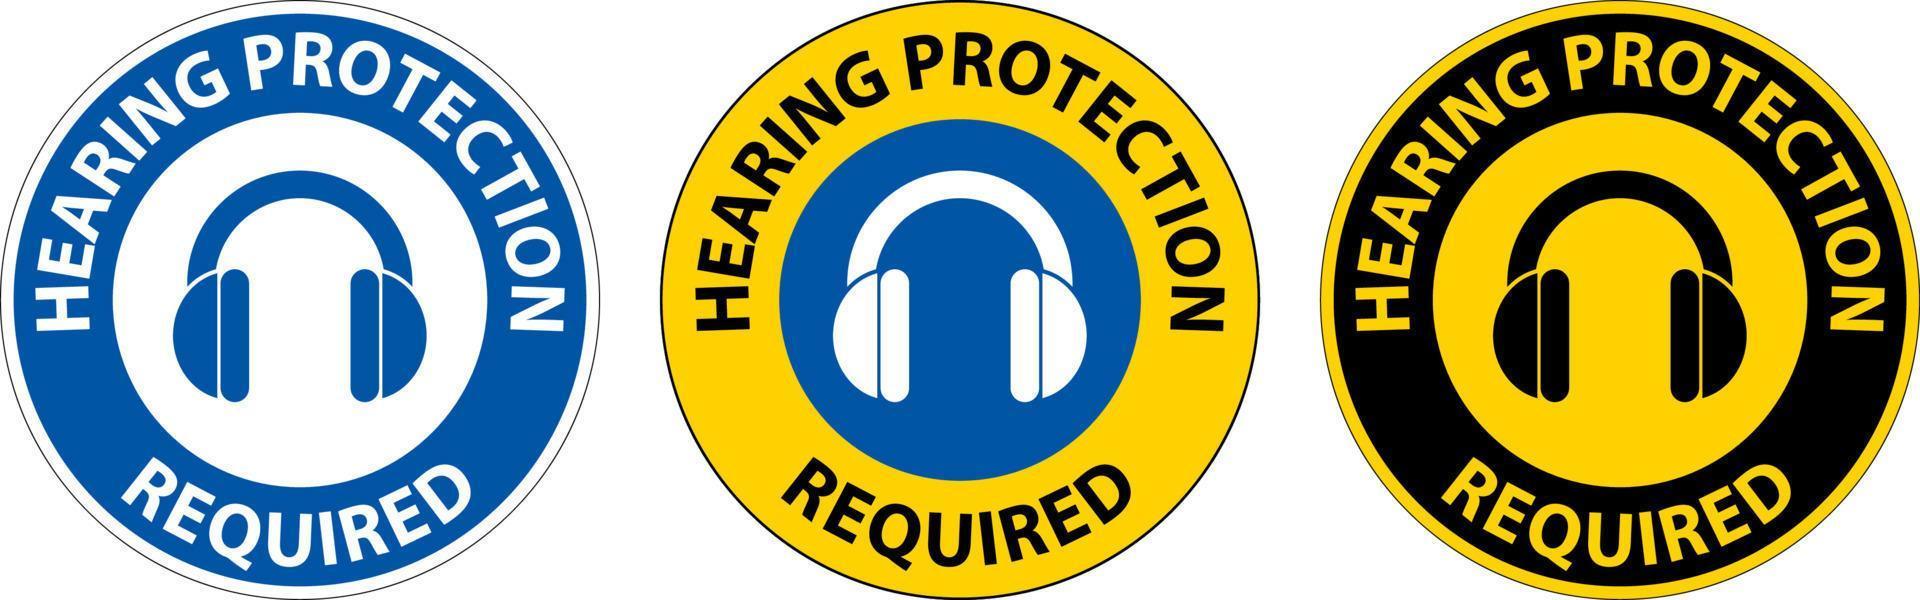 Gehörschutz erforderlich Schild auf weißem Hintergrund vektor